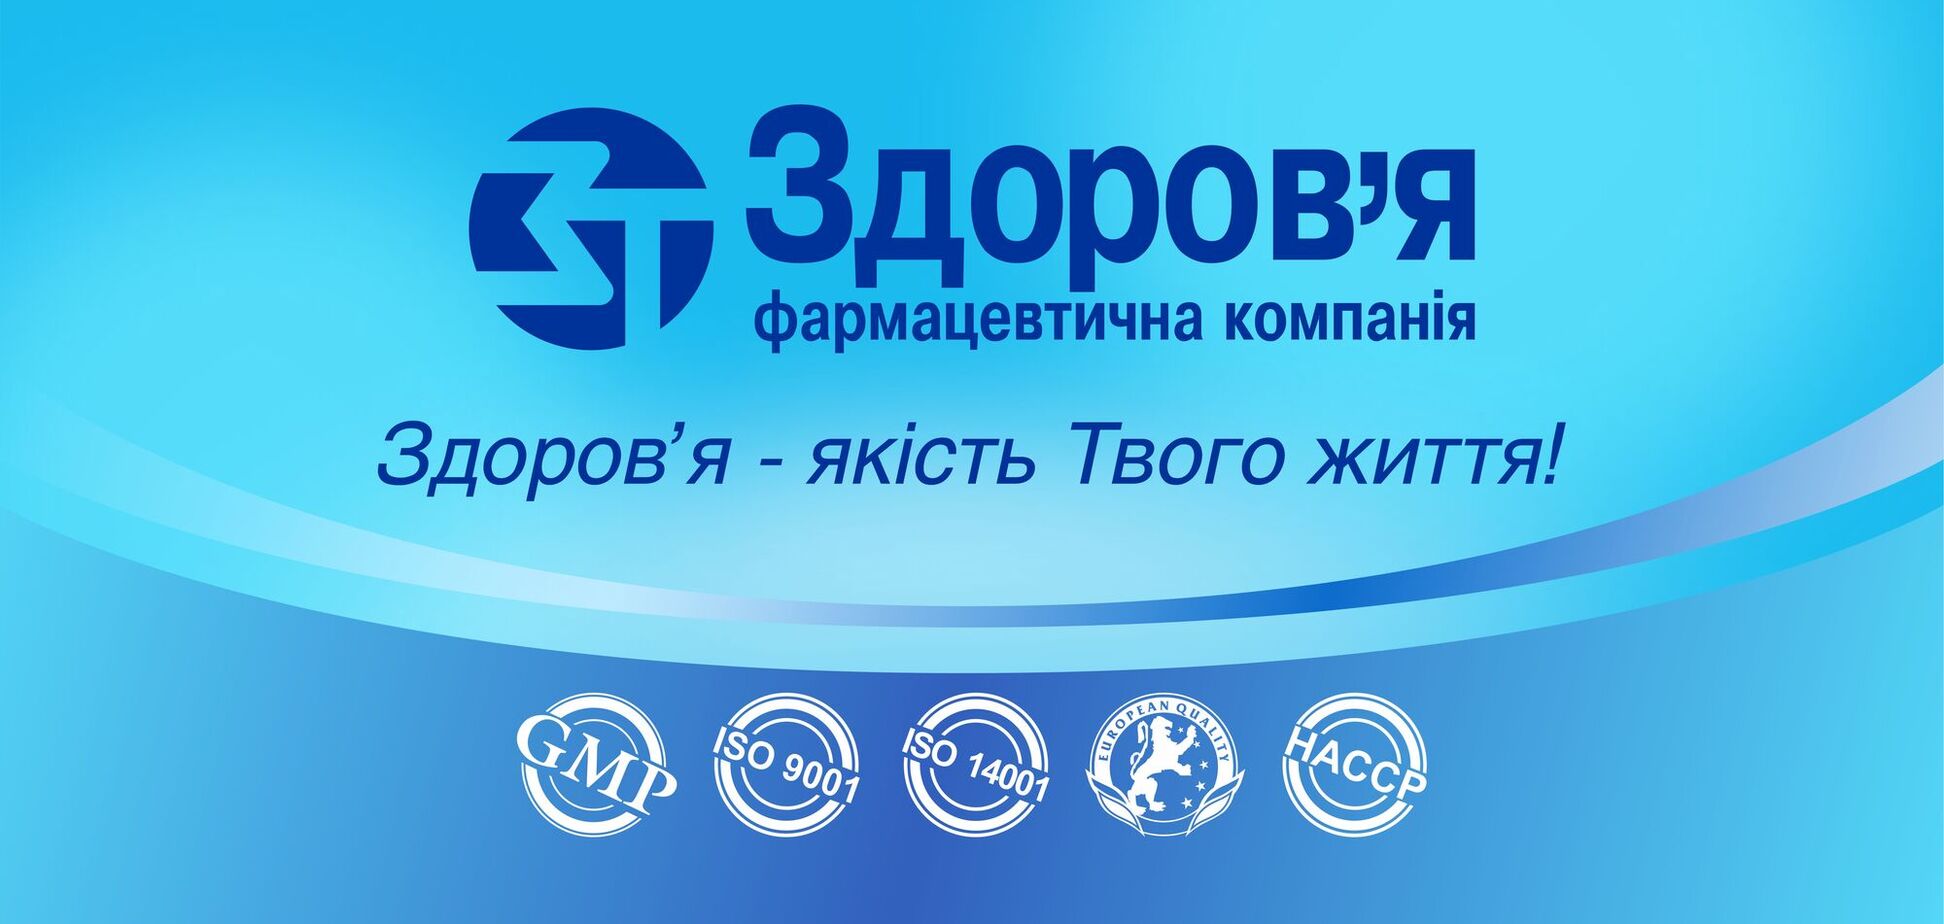 Група фармкомпаній 'Здоров’я' за рік профінансувала реабілітацію для 110 захисників України